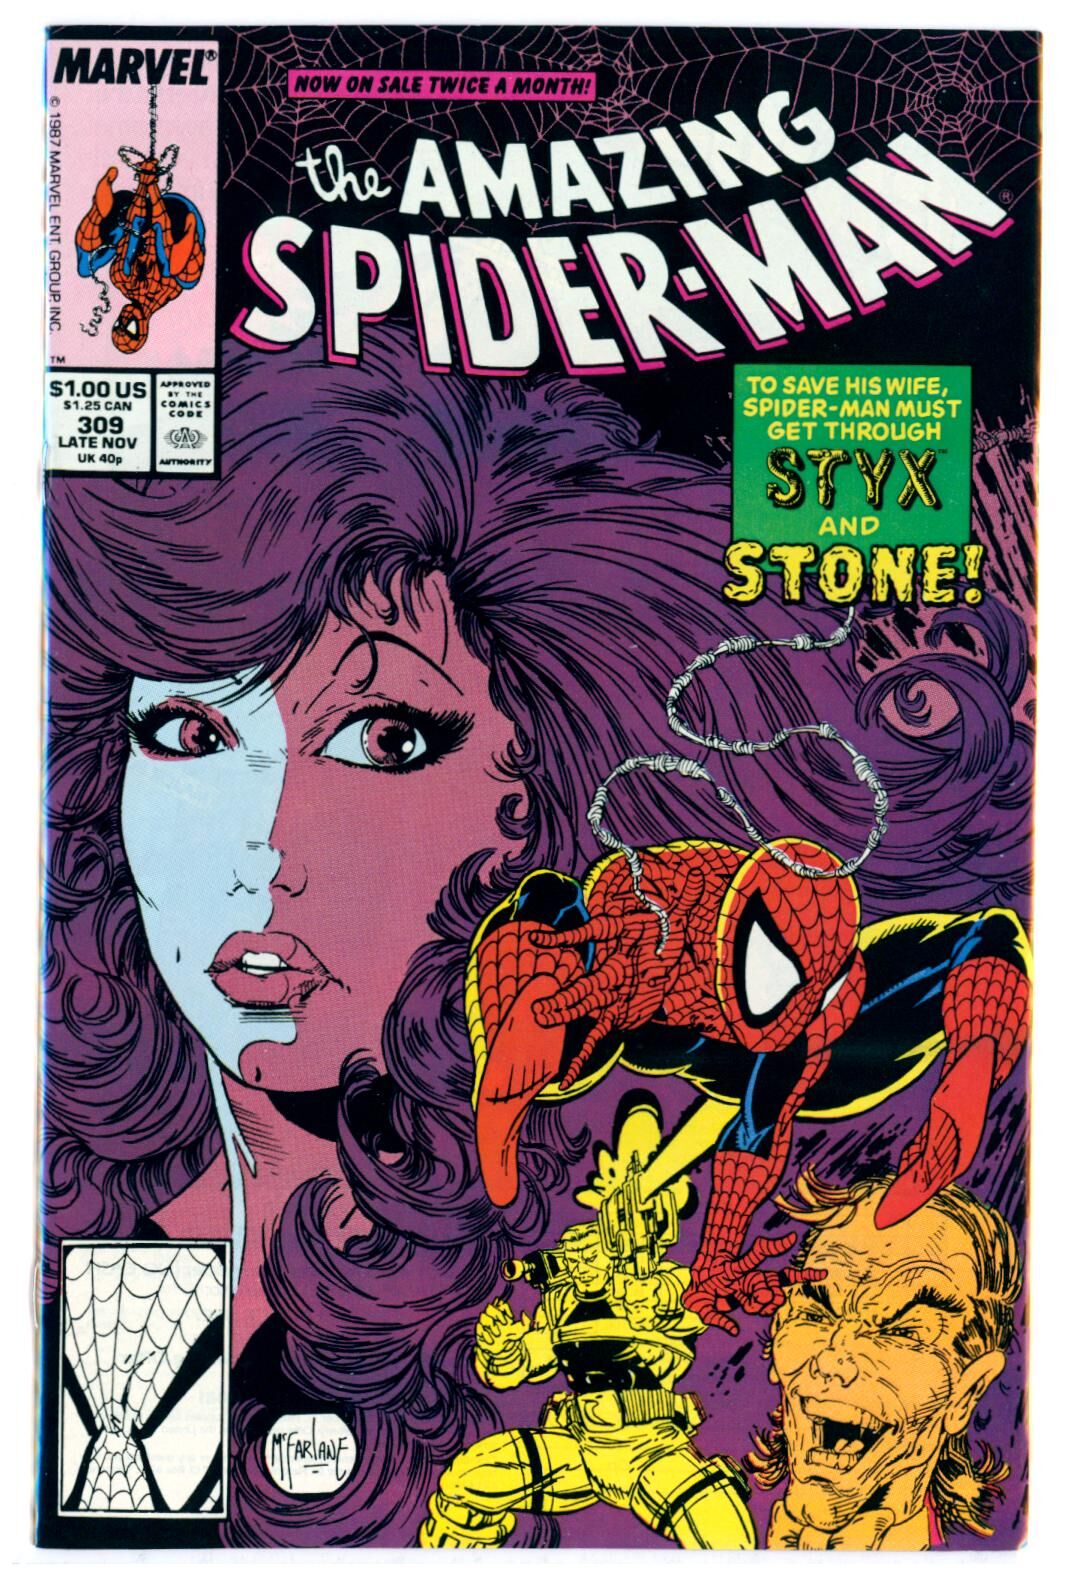 Amazing Spider-Man #309